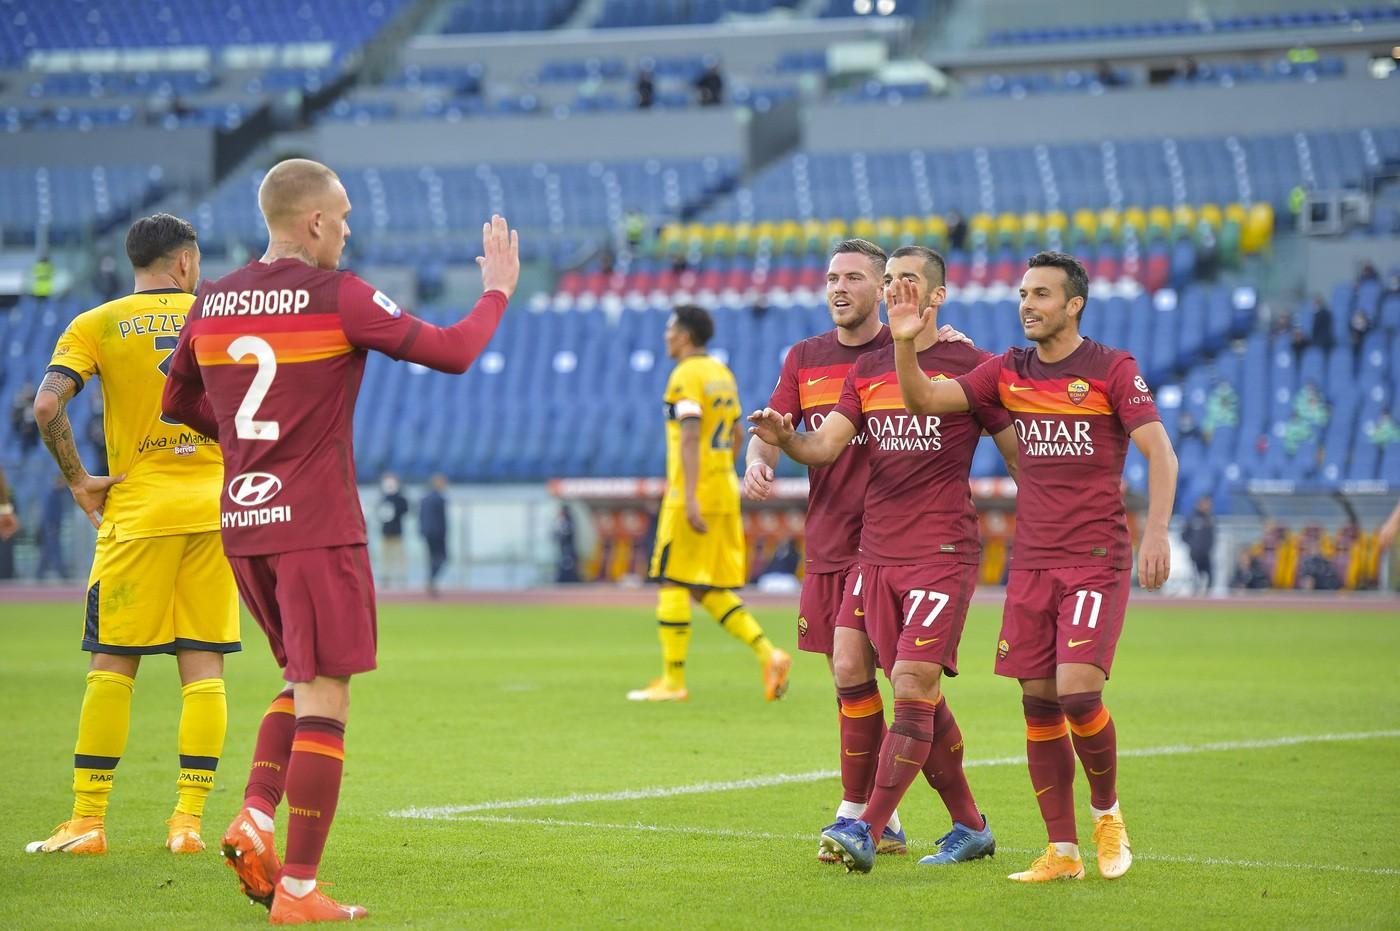 Il gruppo festeggia dopo il secondo gol di Mkhitaryan ©LaPresse